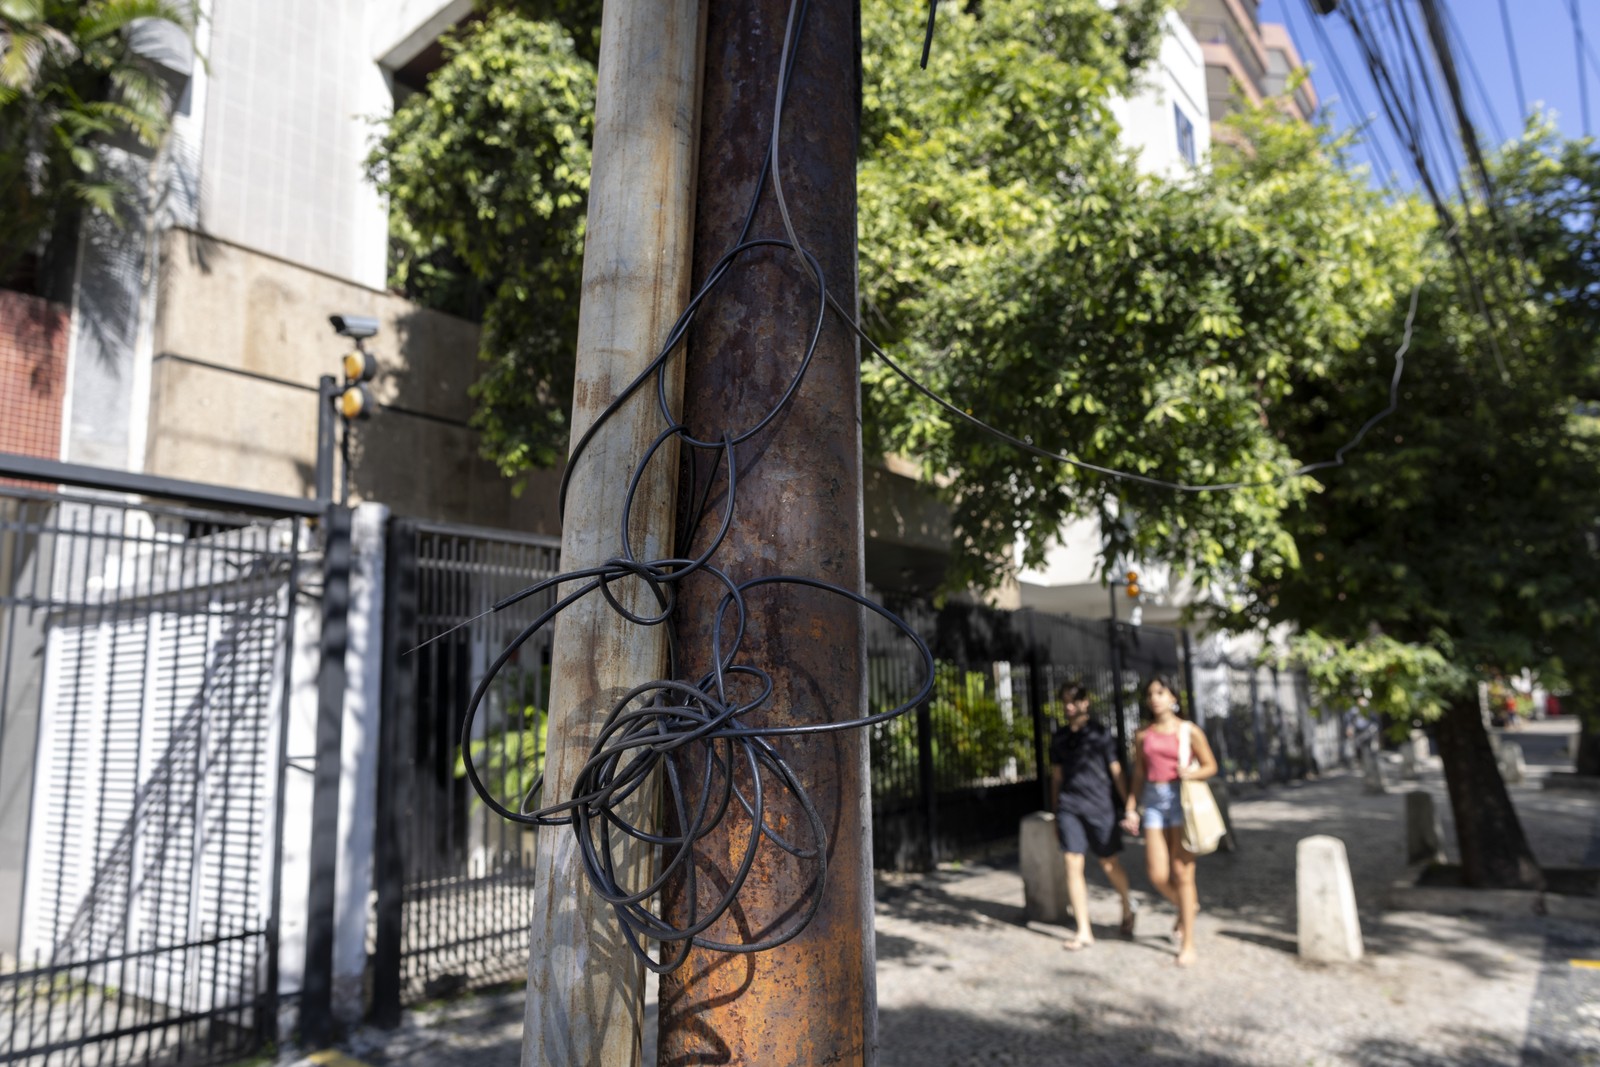 Emaranhado de cabos e fios cortados são comuns e representam riscos nas ruas do Rio. — Foto: Marcia Foletto / Agência O Globo